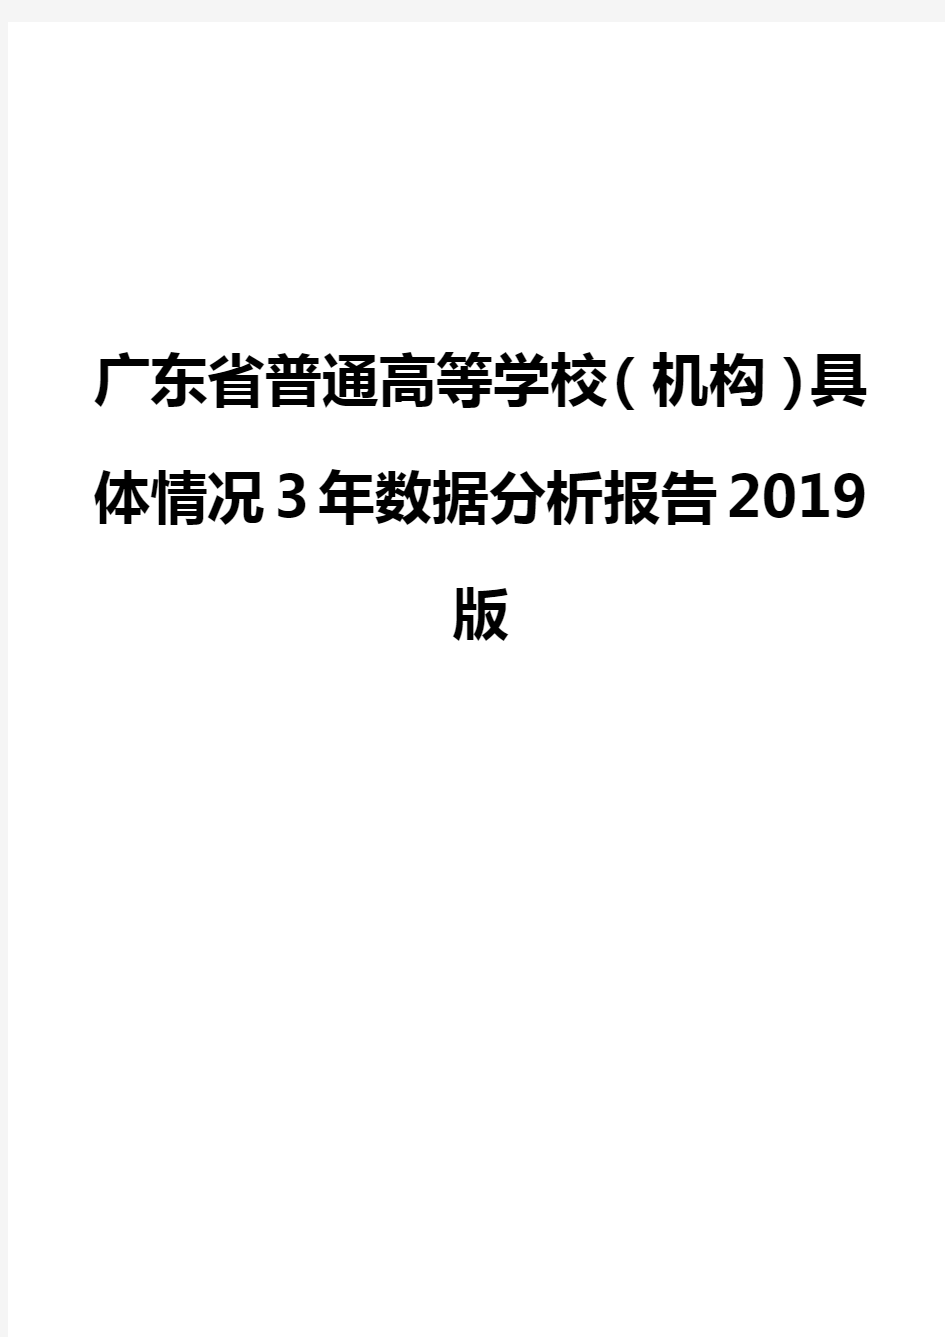 广东省普通高等学校(机构)具体情况3年数据分析报告2019版